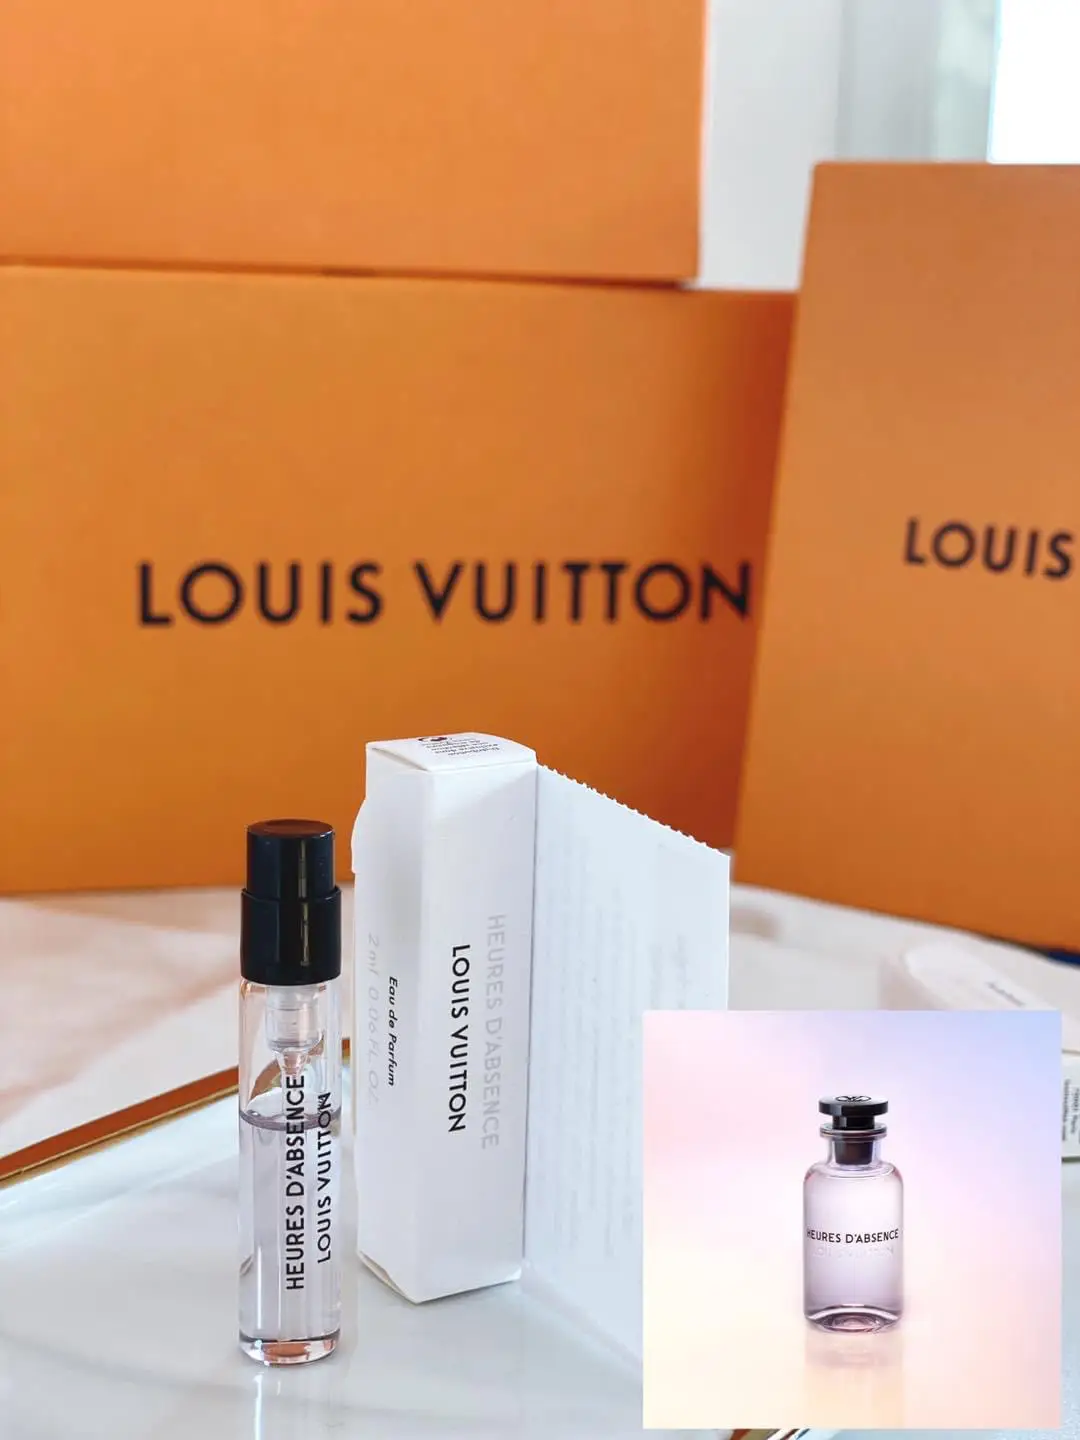 Shop for samples of Heures d'Absence (Eau de Parfum) by Louis